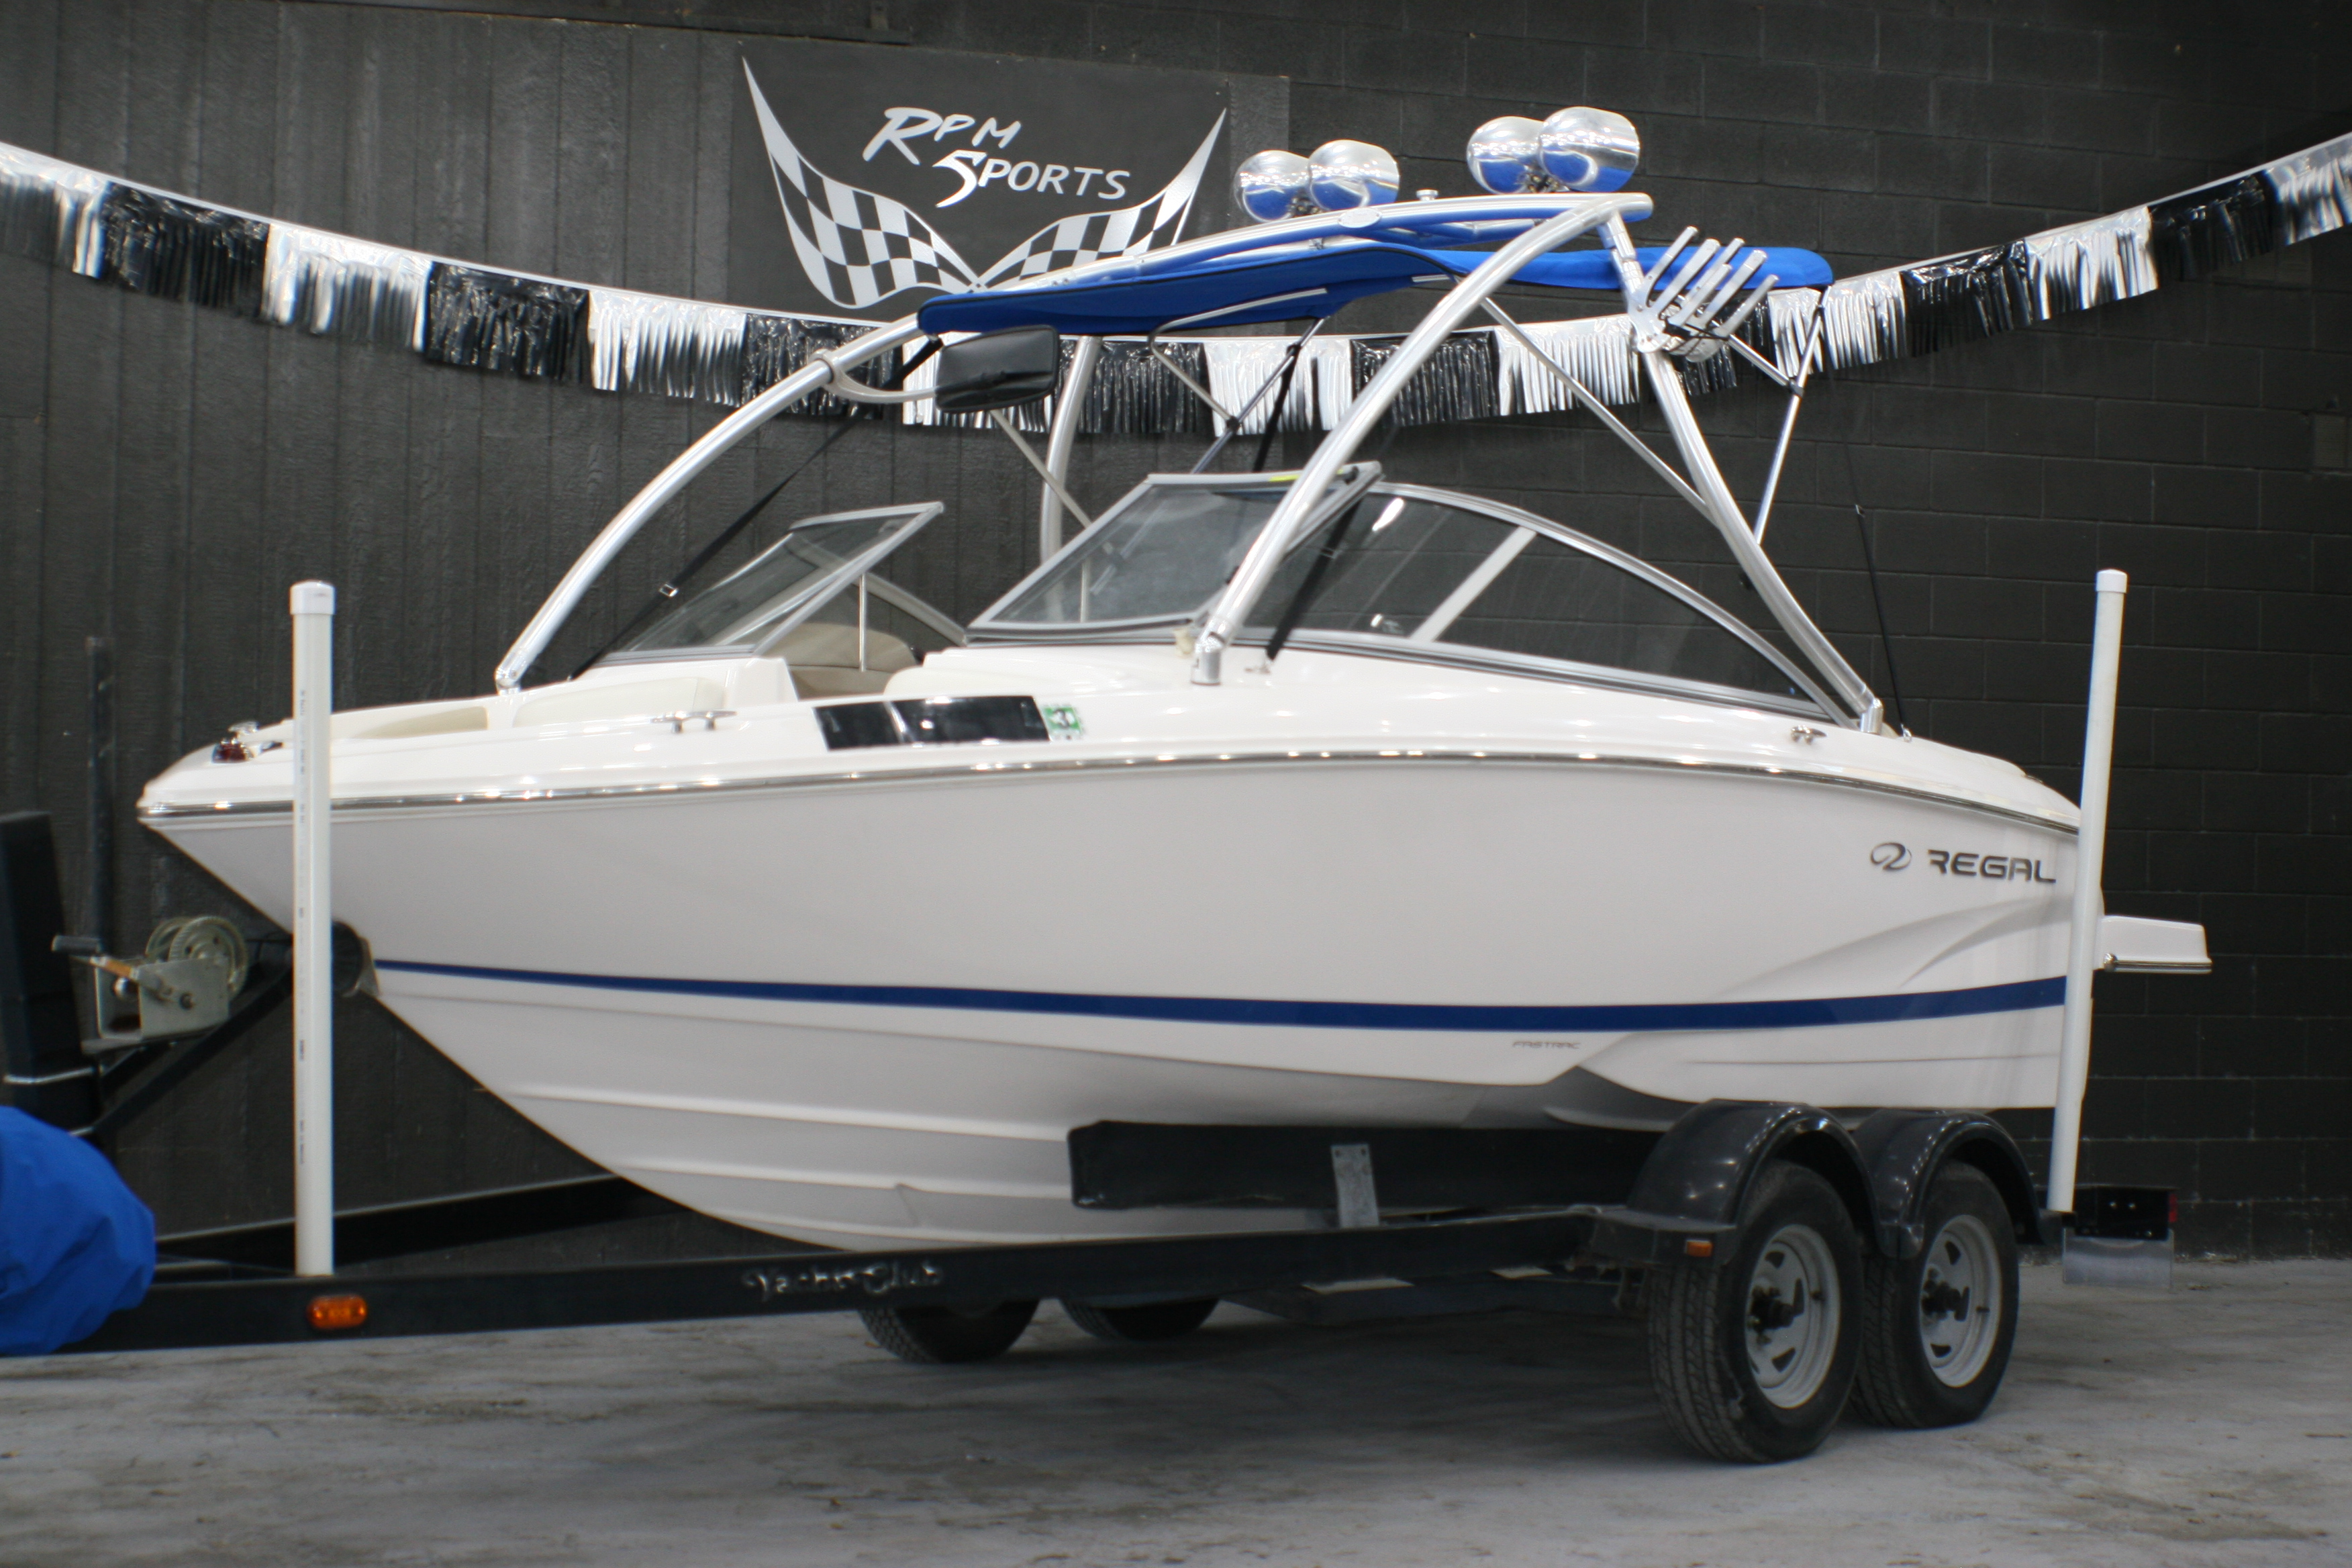 2013 Regal 1900 Power boat for sale in McQueeney, TX - image 1 